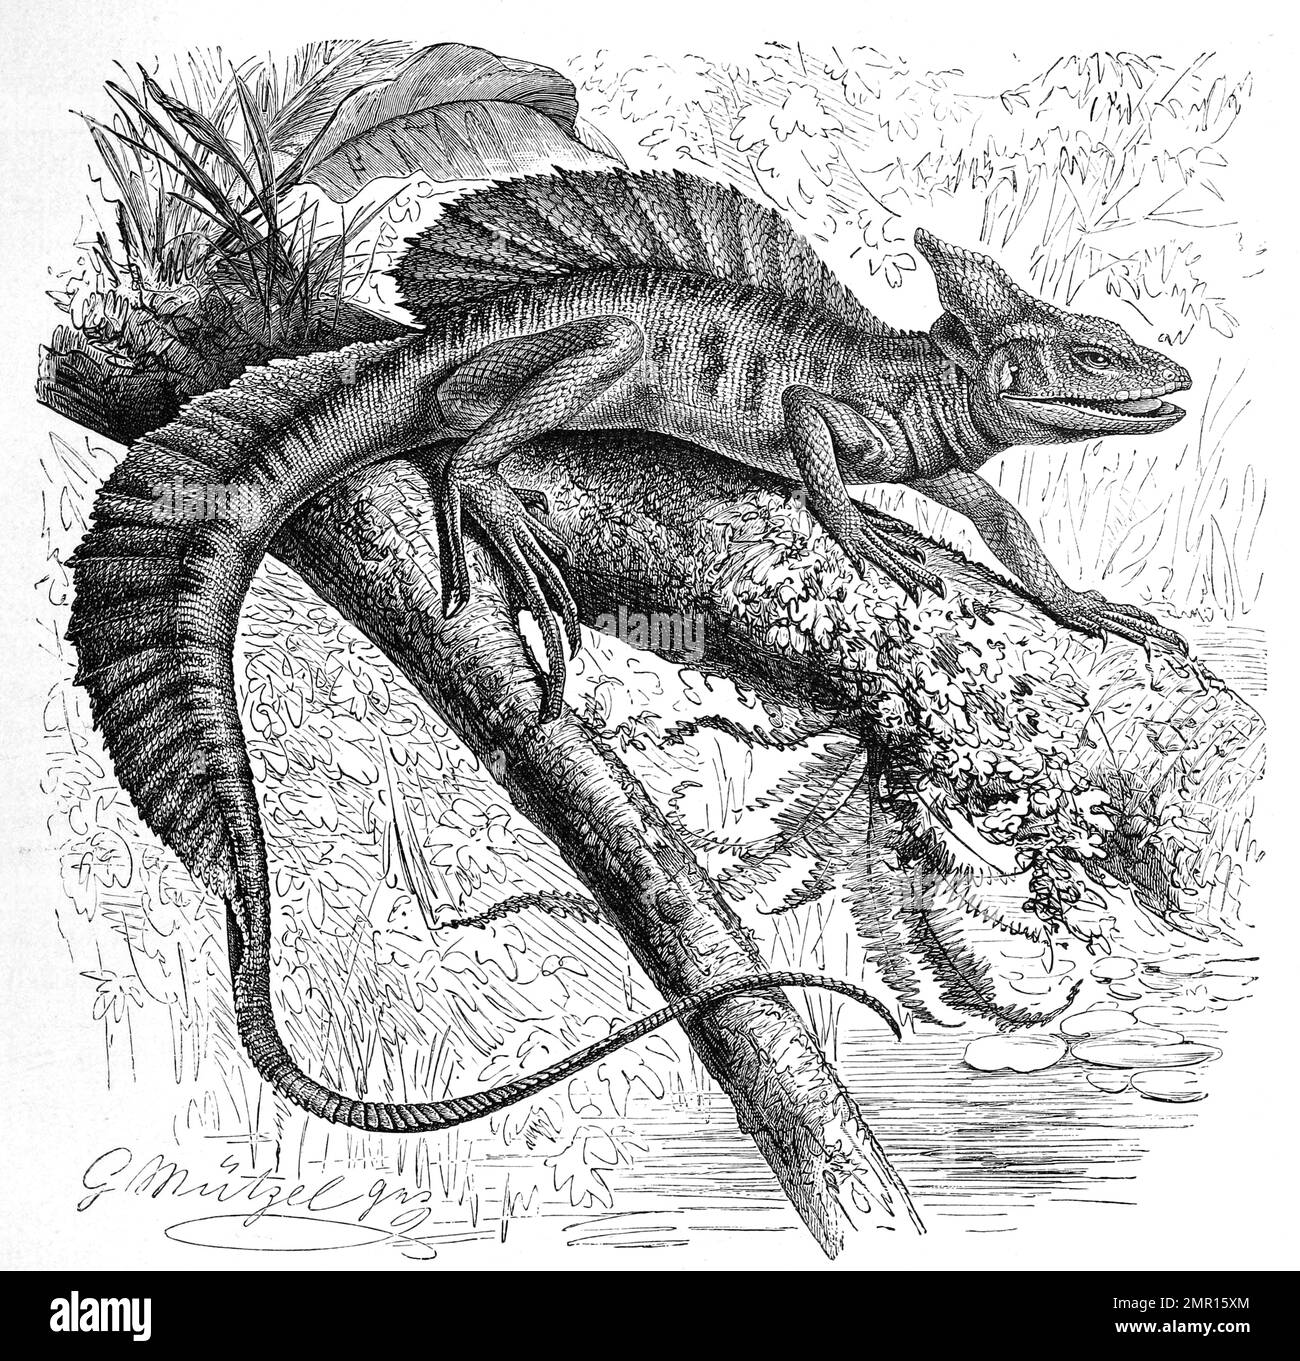 Helmbasilisk, Basiliscus americanus, Historisch, digital restaurierte Reproduktion von einer Vorlage aus dem 19. Jahrhundert Banque D'Images